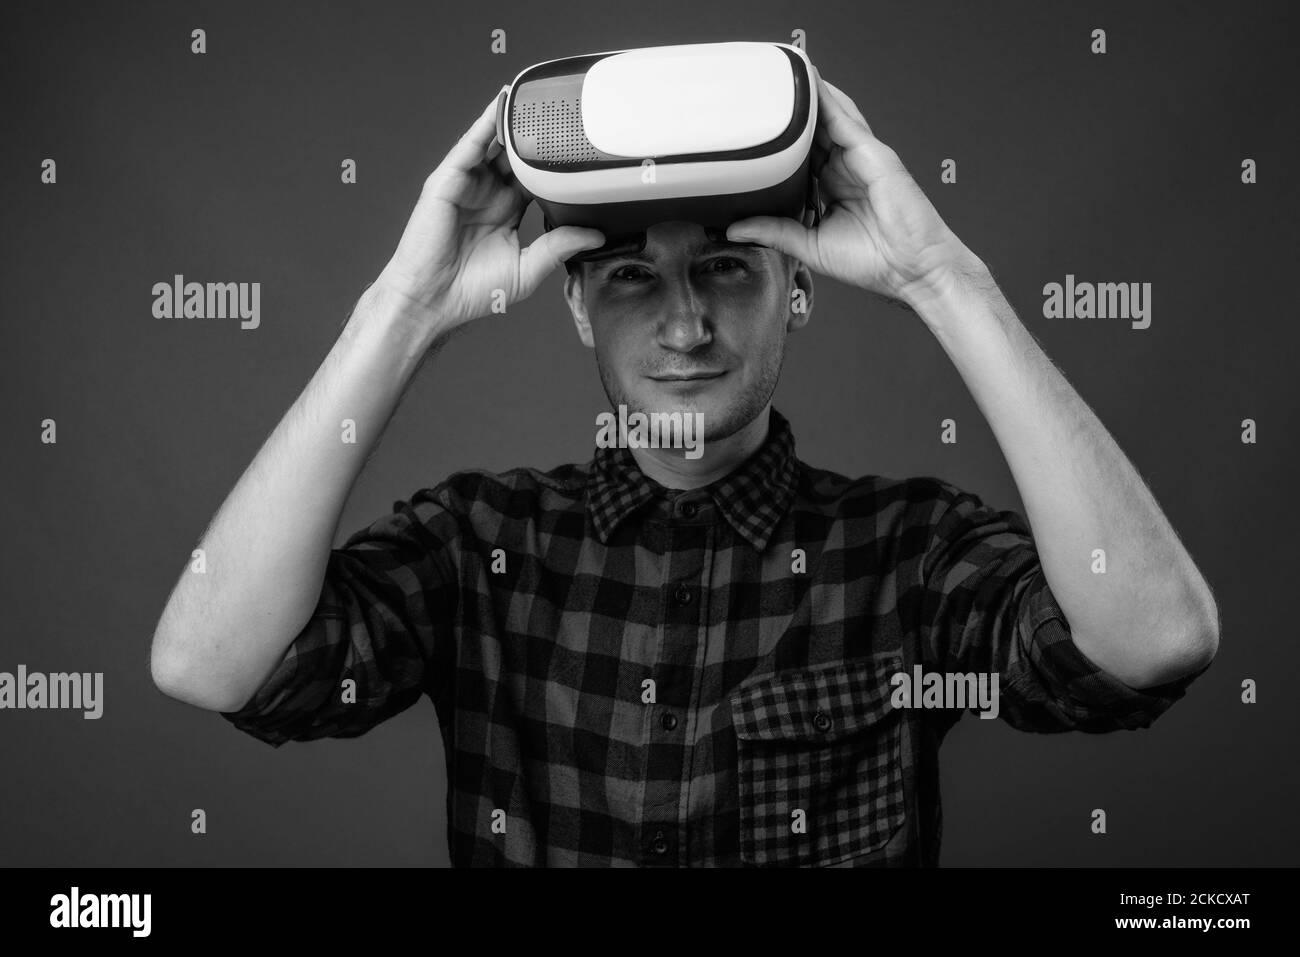 Portrait de l'homme hippster avec lunettes VR sur fond gris Banque D'Images